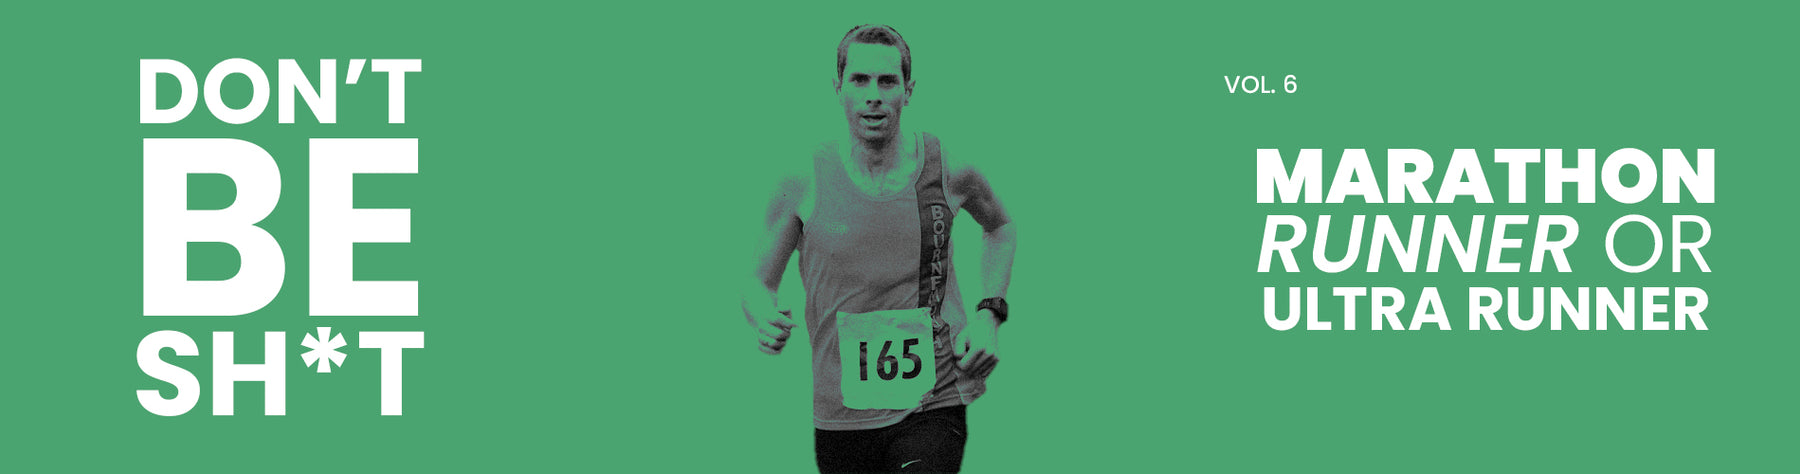 The "Don't Be Sh*t!" Series - Marathon Runner or Ultra Runner